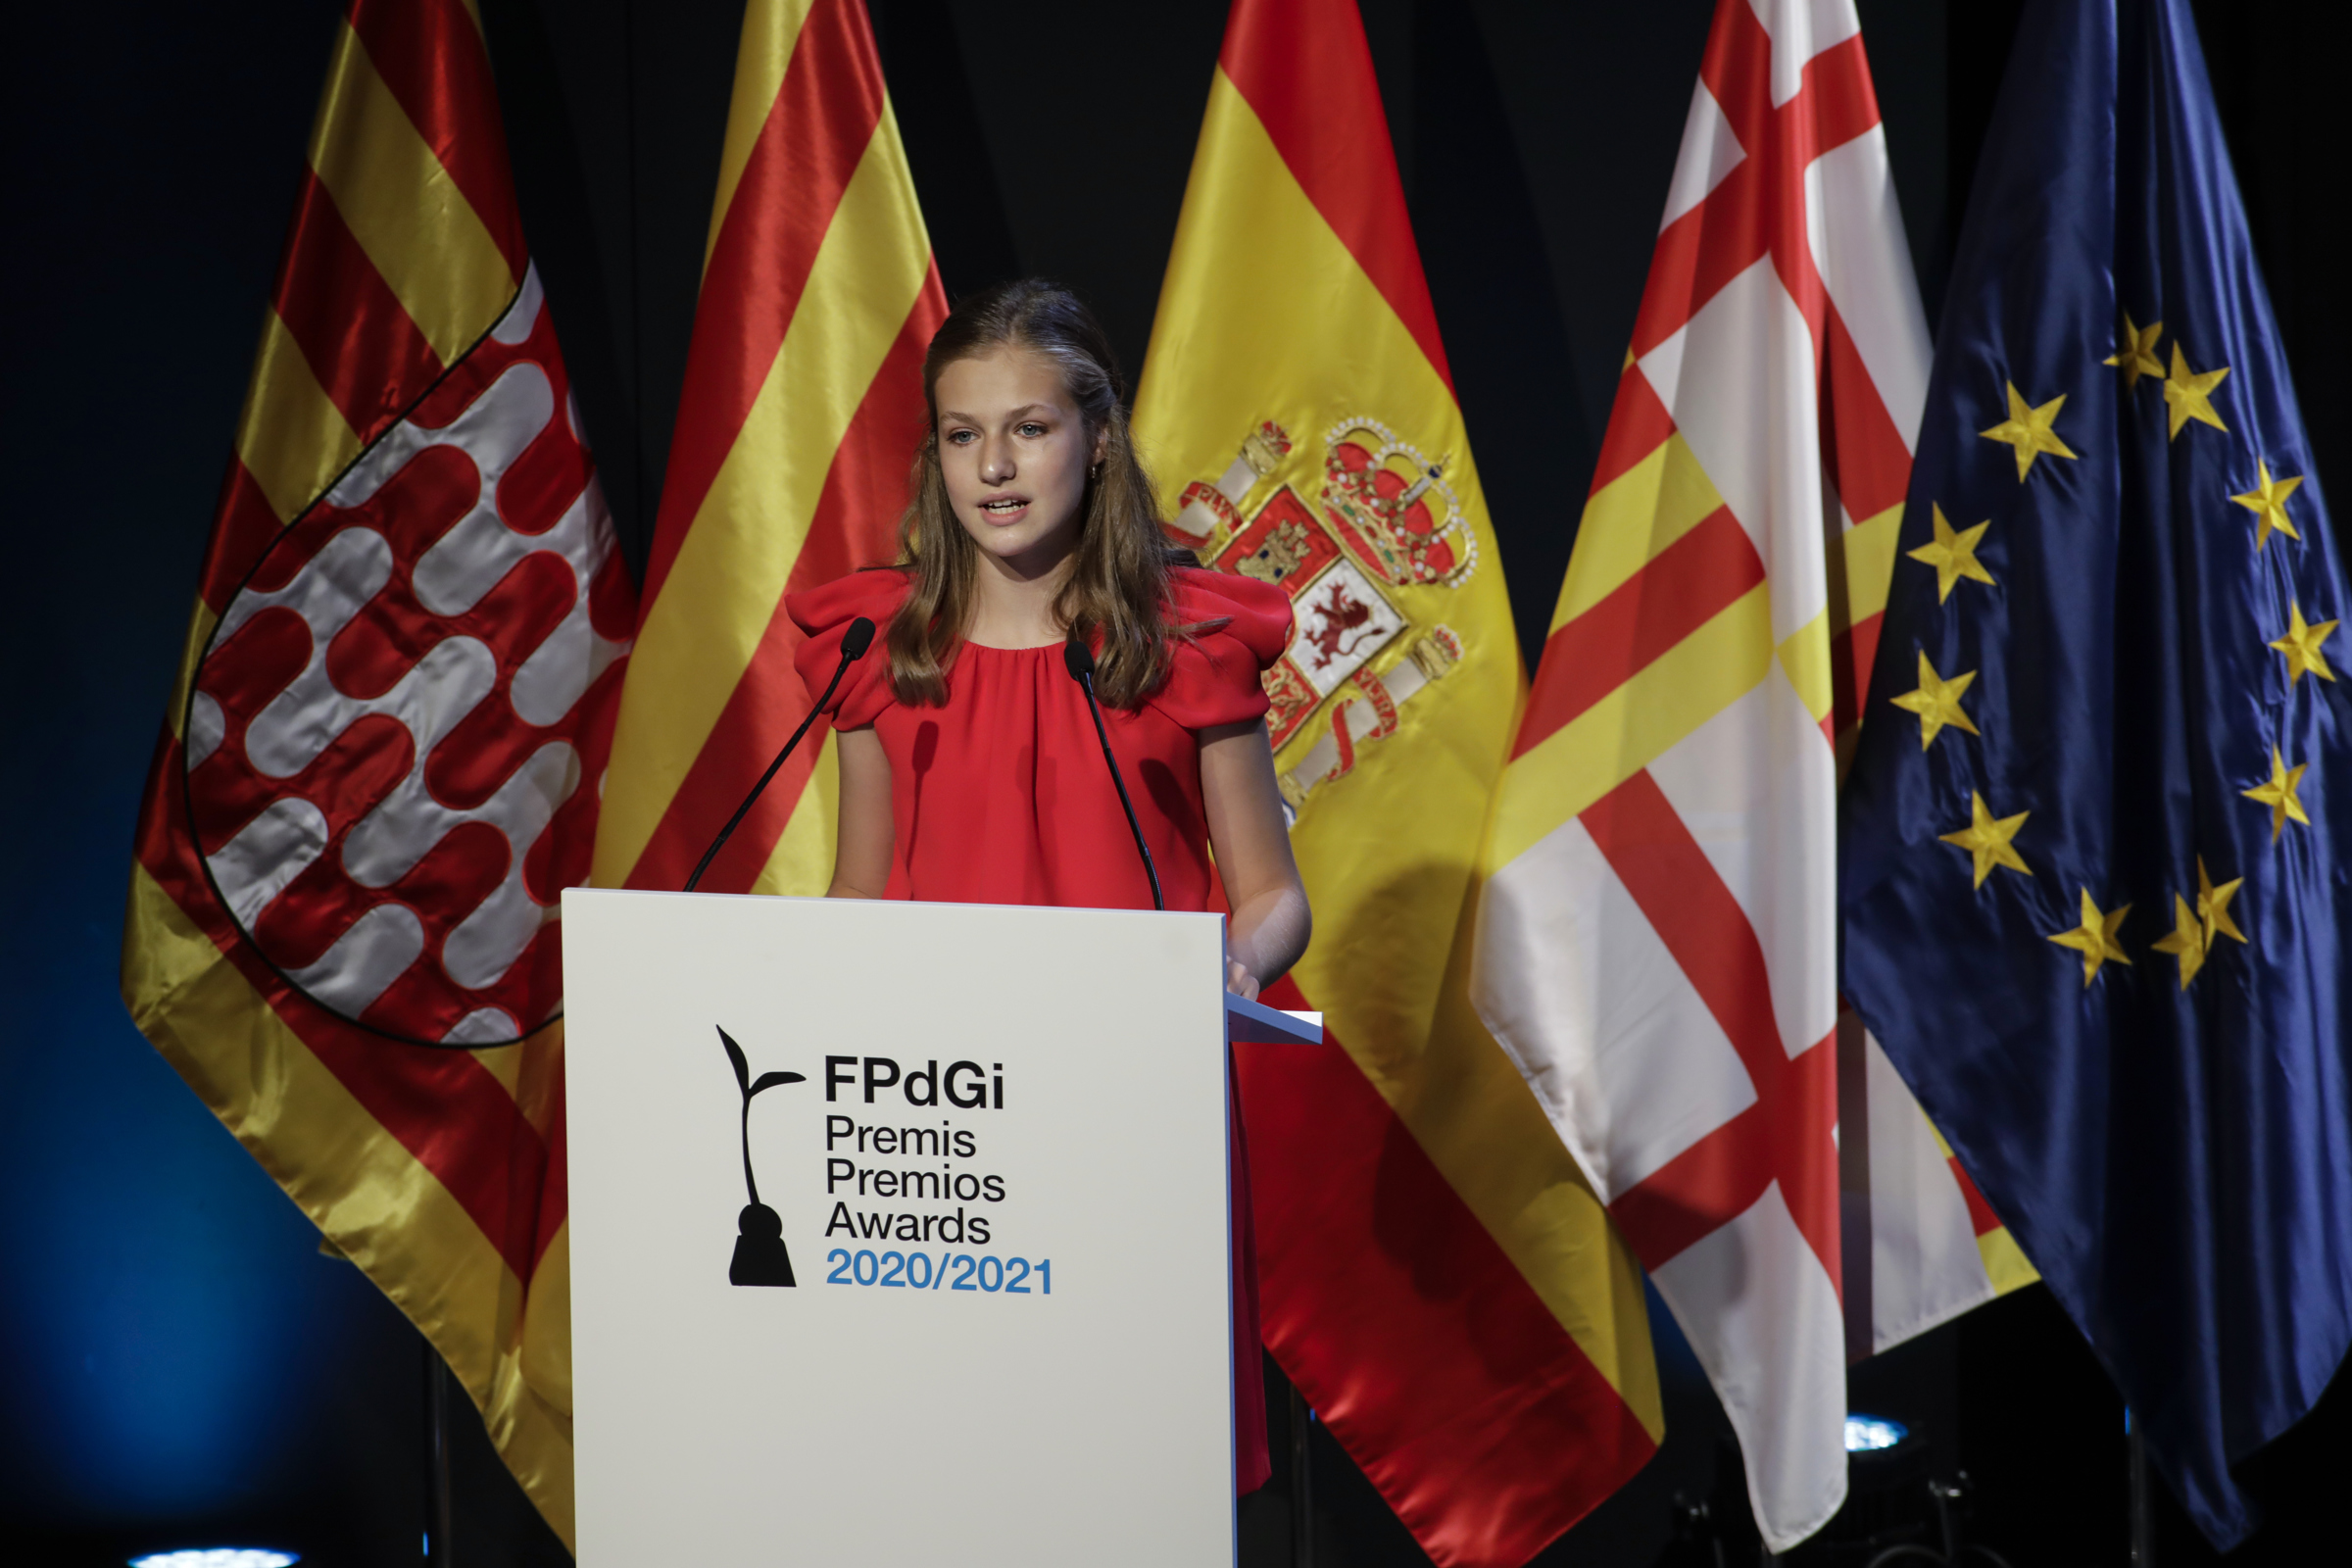 Palabras de Su Alteza Real la Princesa de Asturias y de Girona